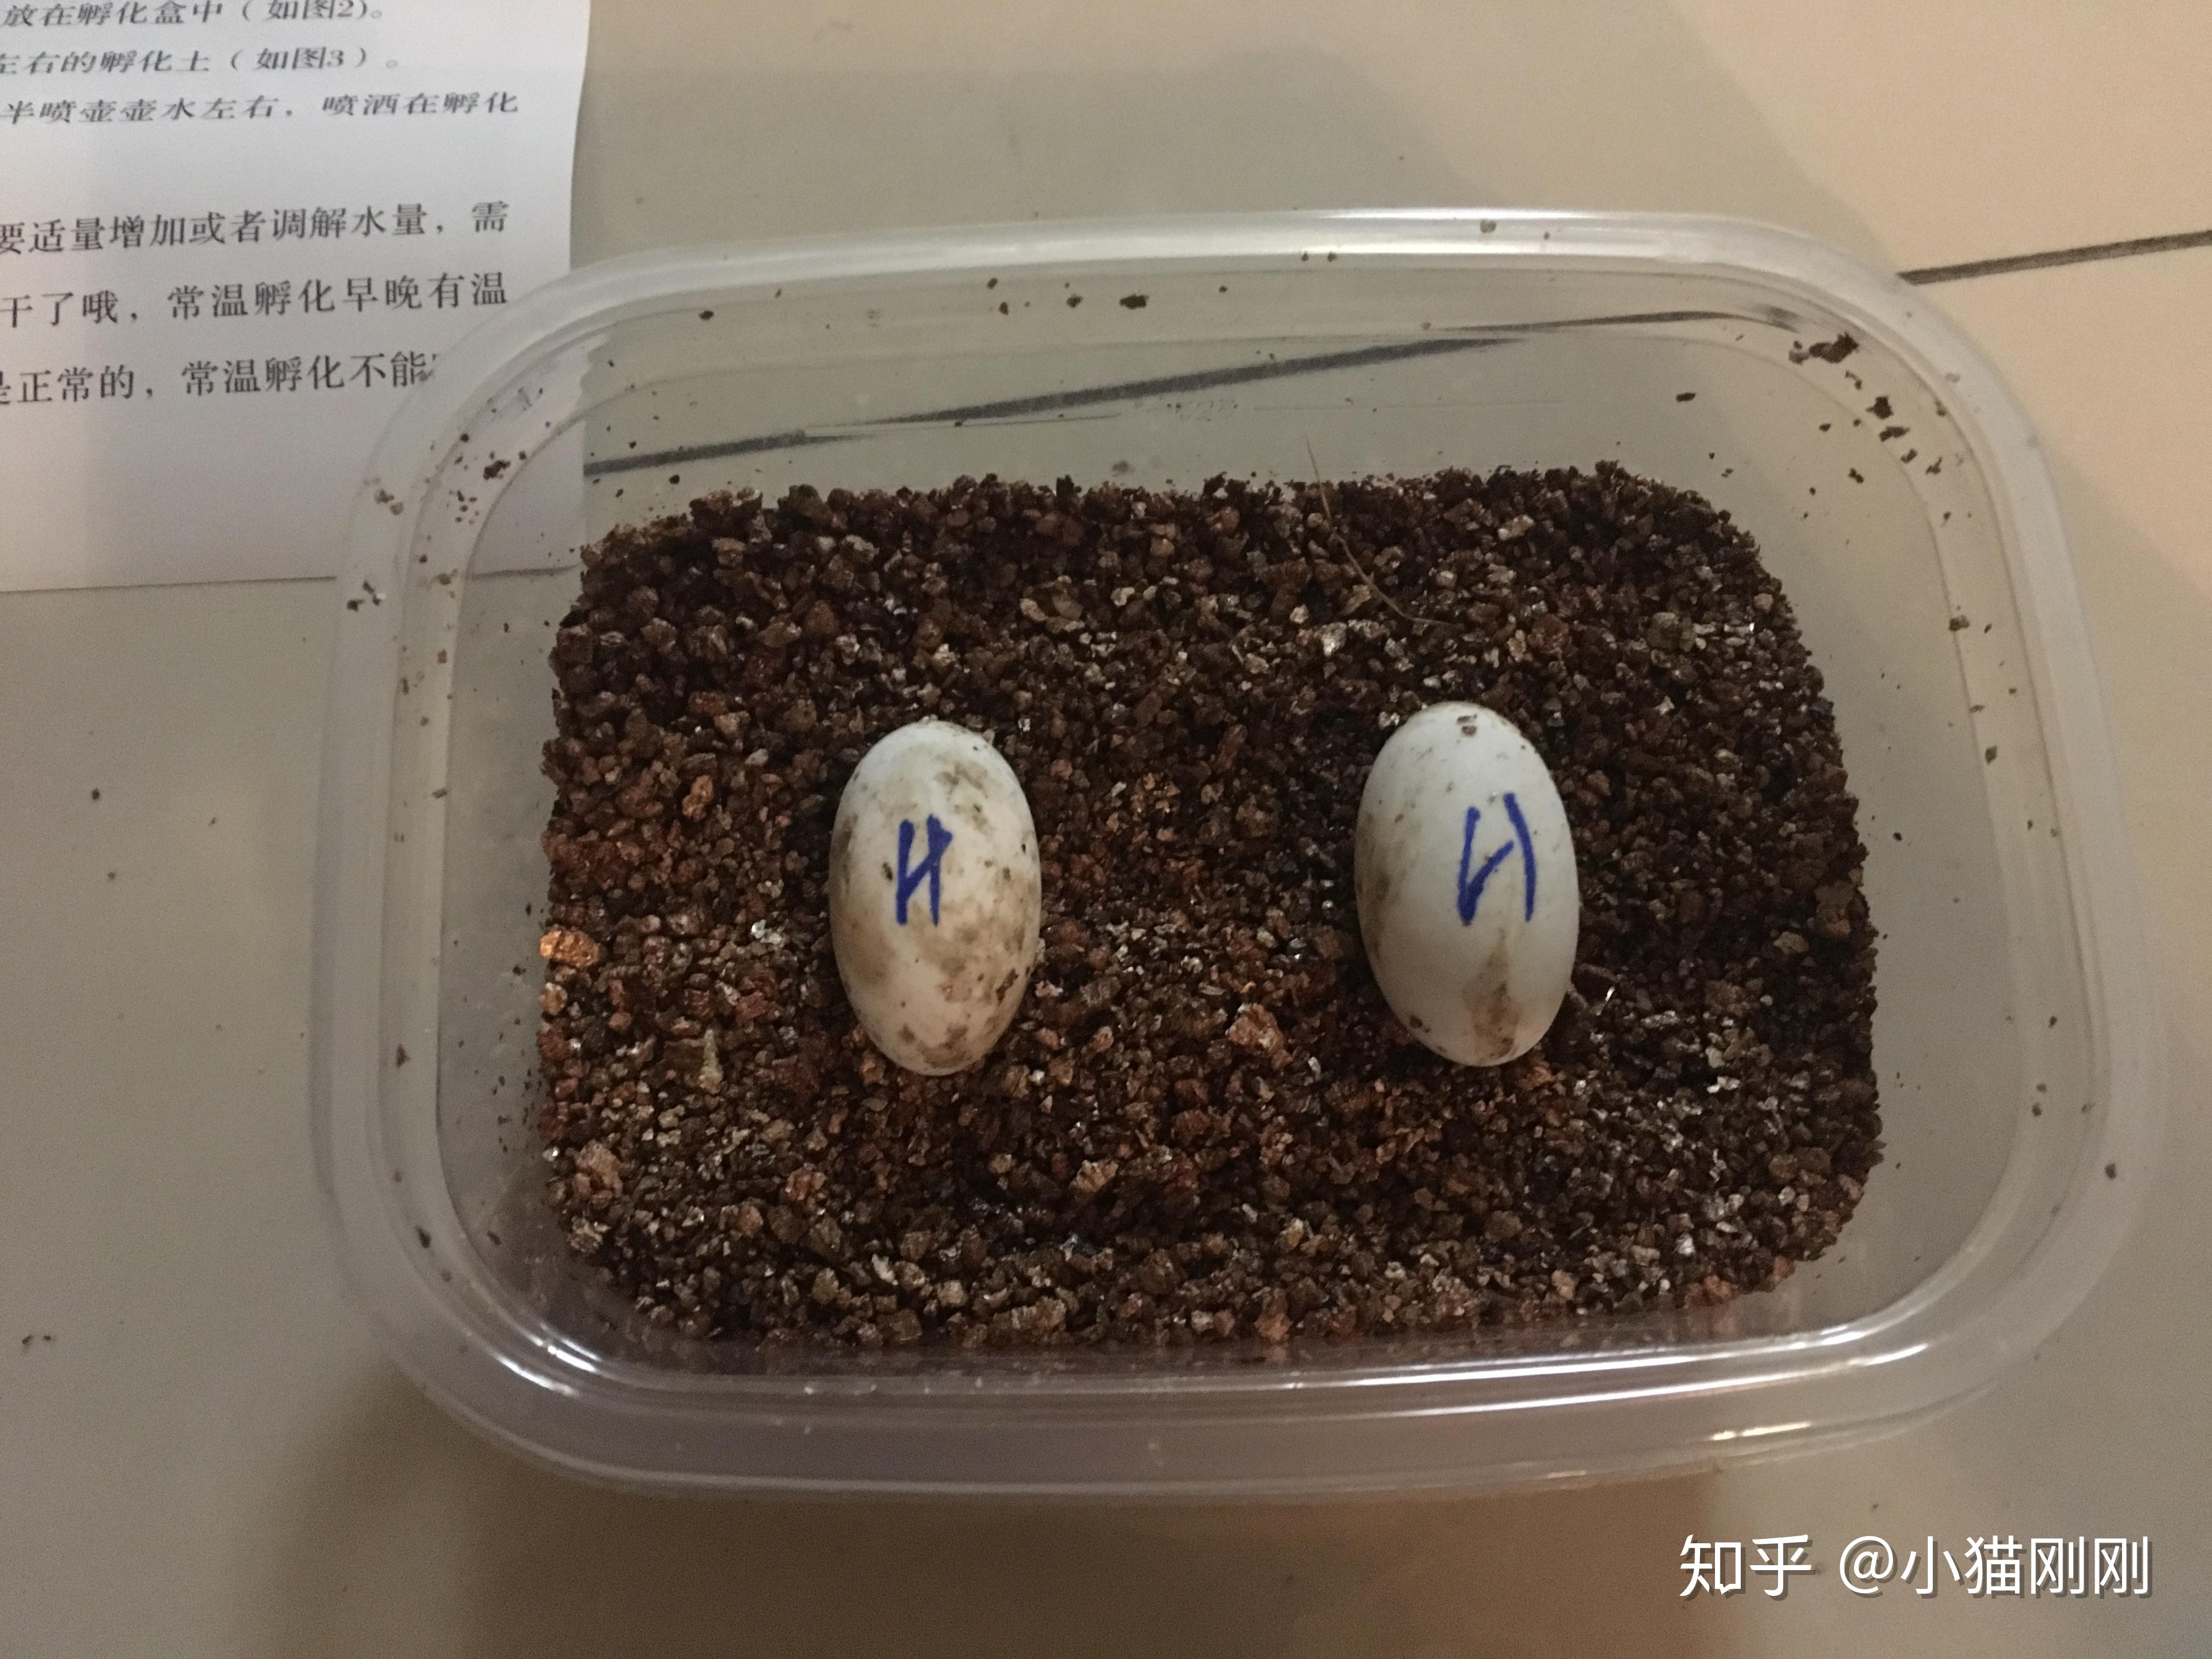 【孵蛋原理+孵蛋教學】雞蛋在孵化的過程中需要做好哪些呢? - 台灣孵蛋器|孵蛋機網絡商店